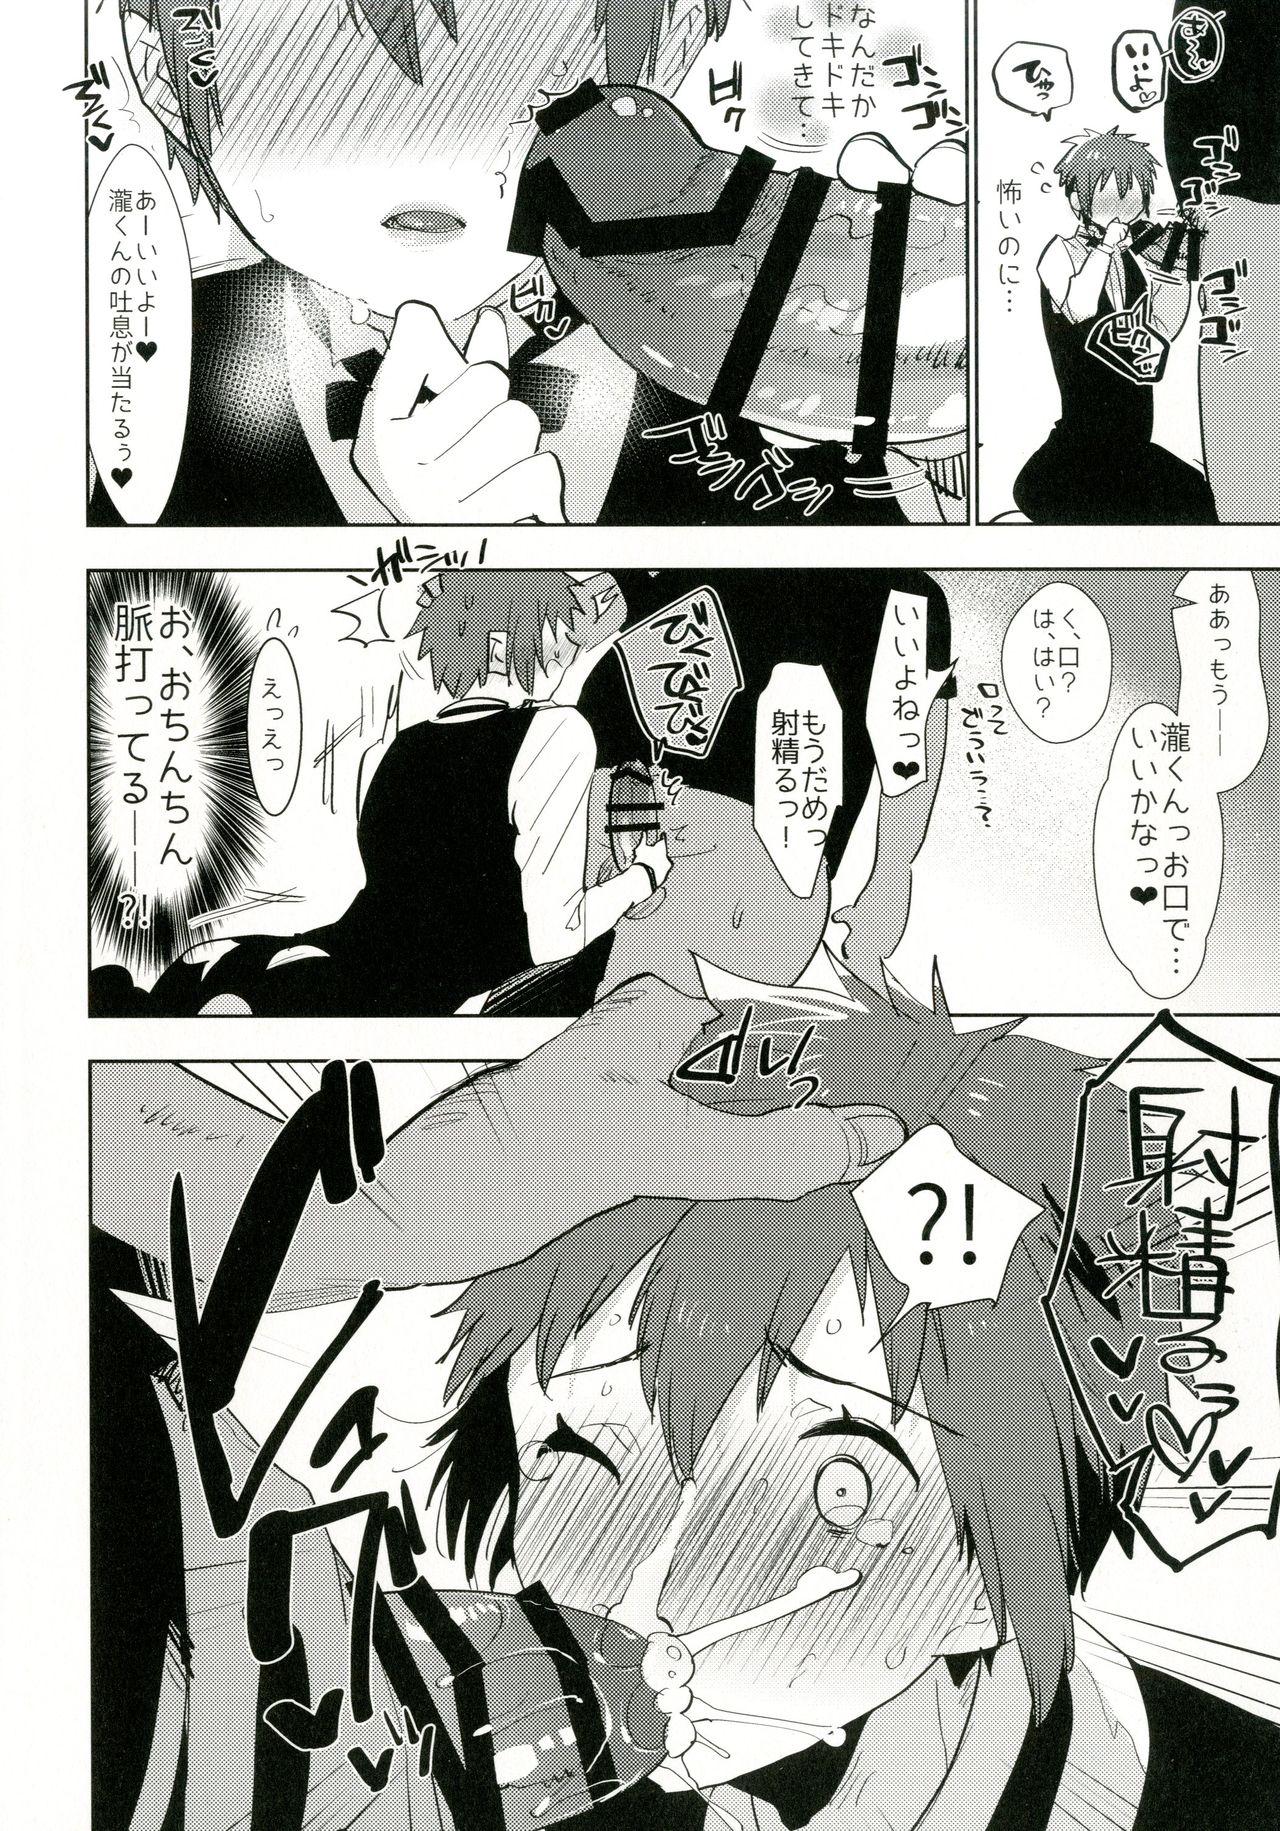 Pussy Eating Watashi no Yume ga Owaru made. - Kimi no na wa. Gloryhole - Page 8